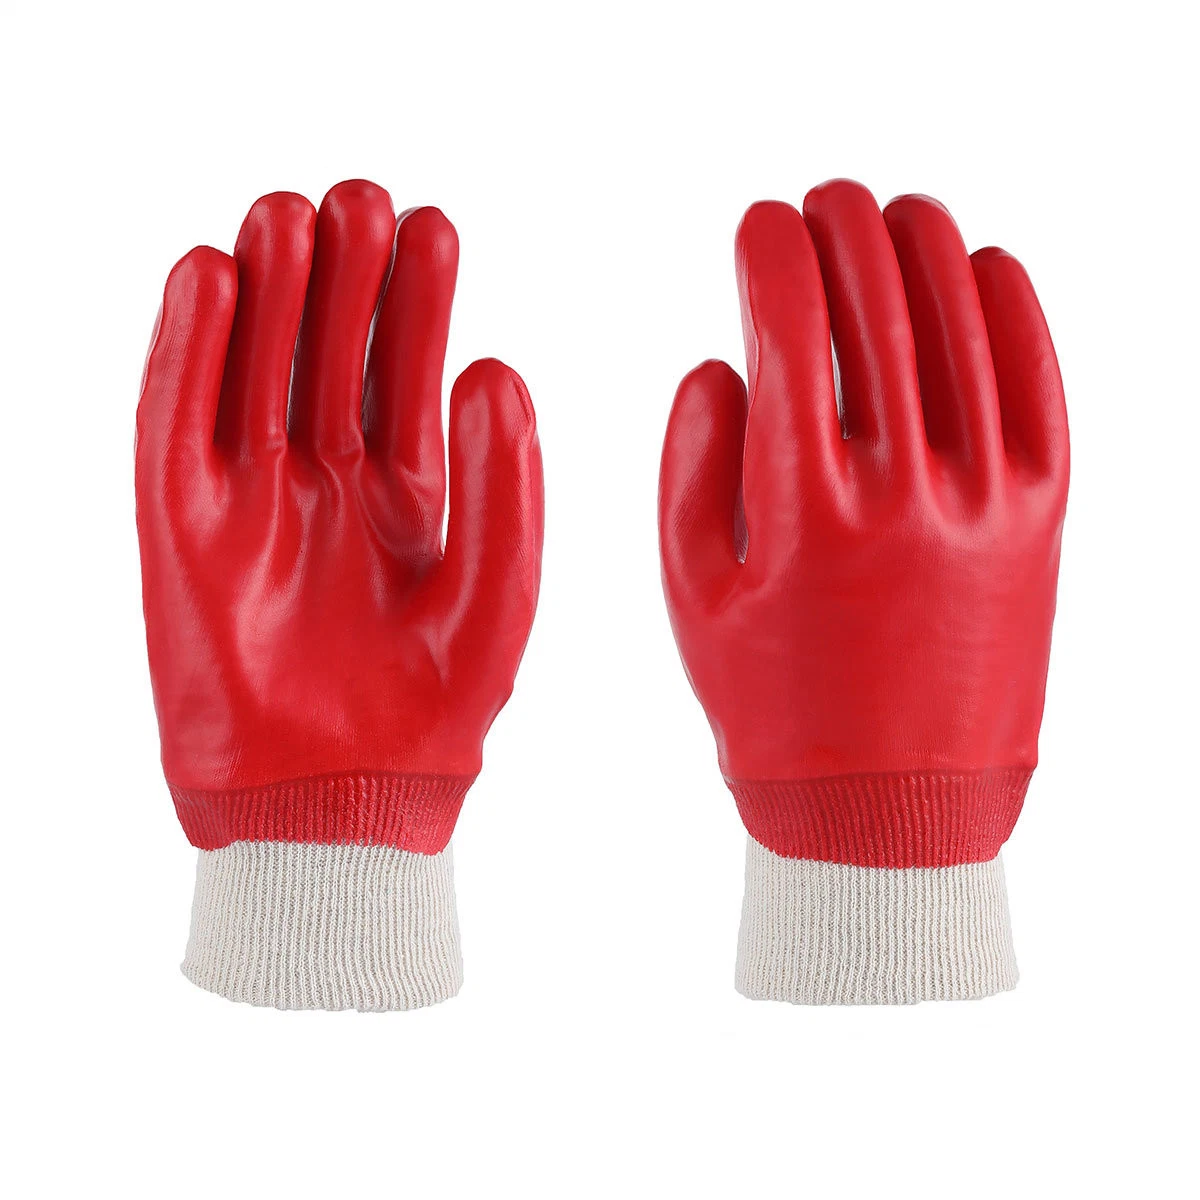 Brassard de poignet gant enduit résistant aux produits chimiques à usage intensif de pendage premium lisse en nitrile sécurité fini avec tricot en PVC rouge